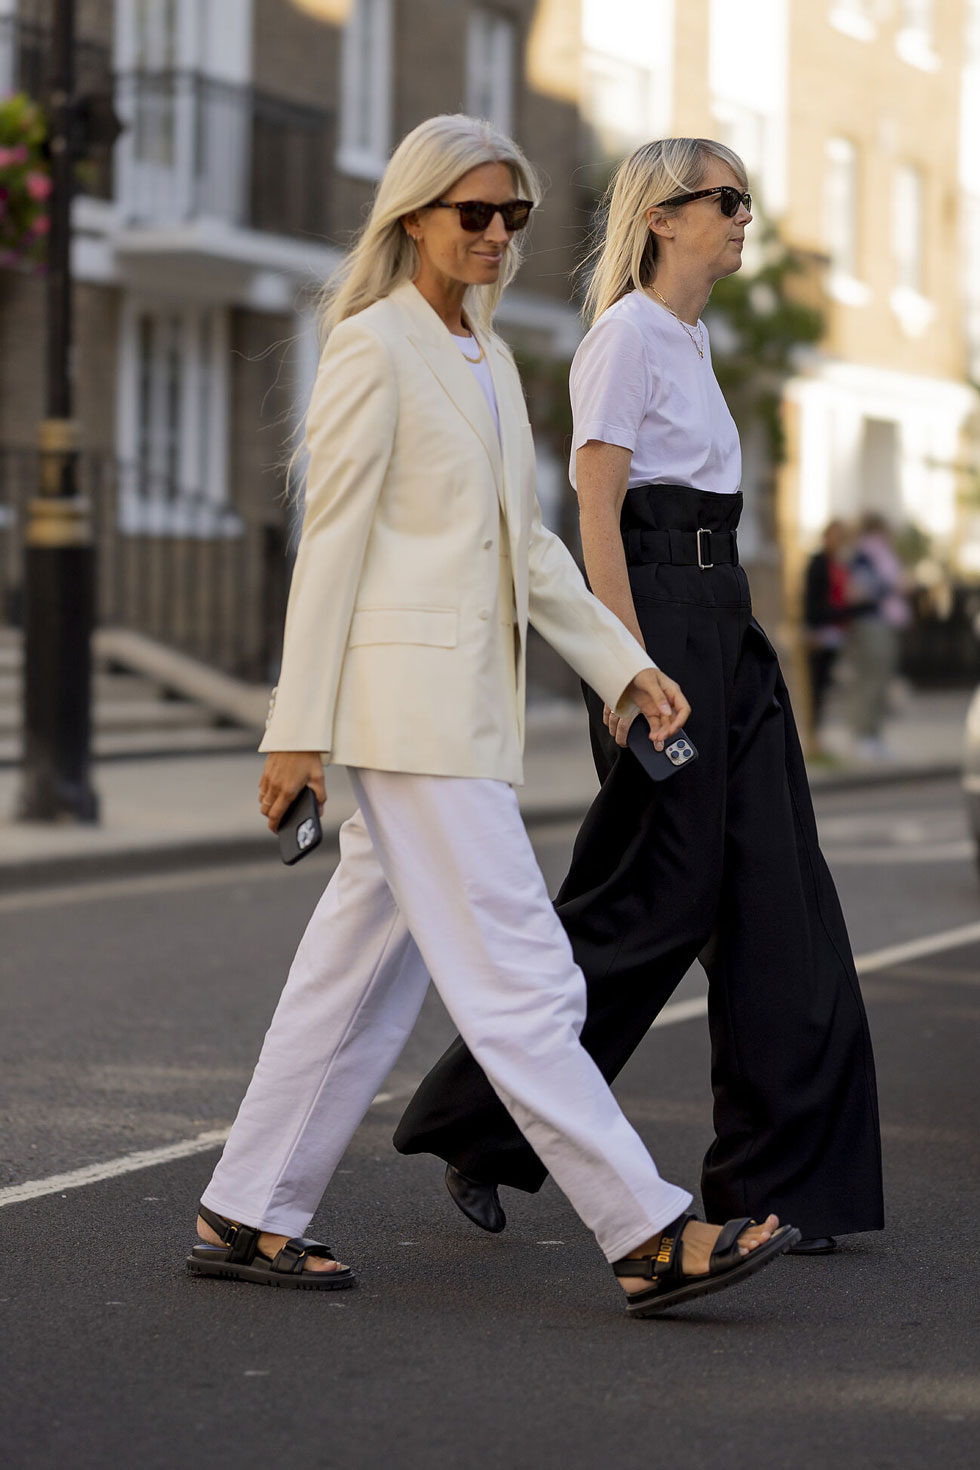 Женщина в простых белых брюках, пиджаке молочного цвета и сандалиях на липучках